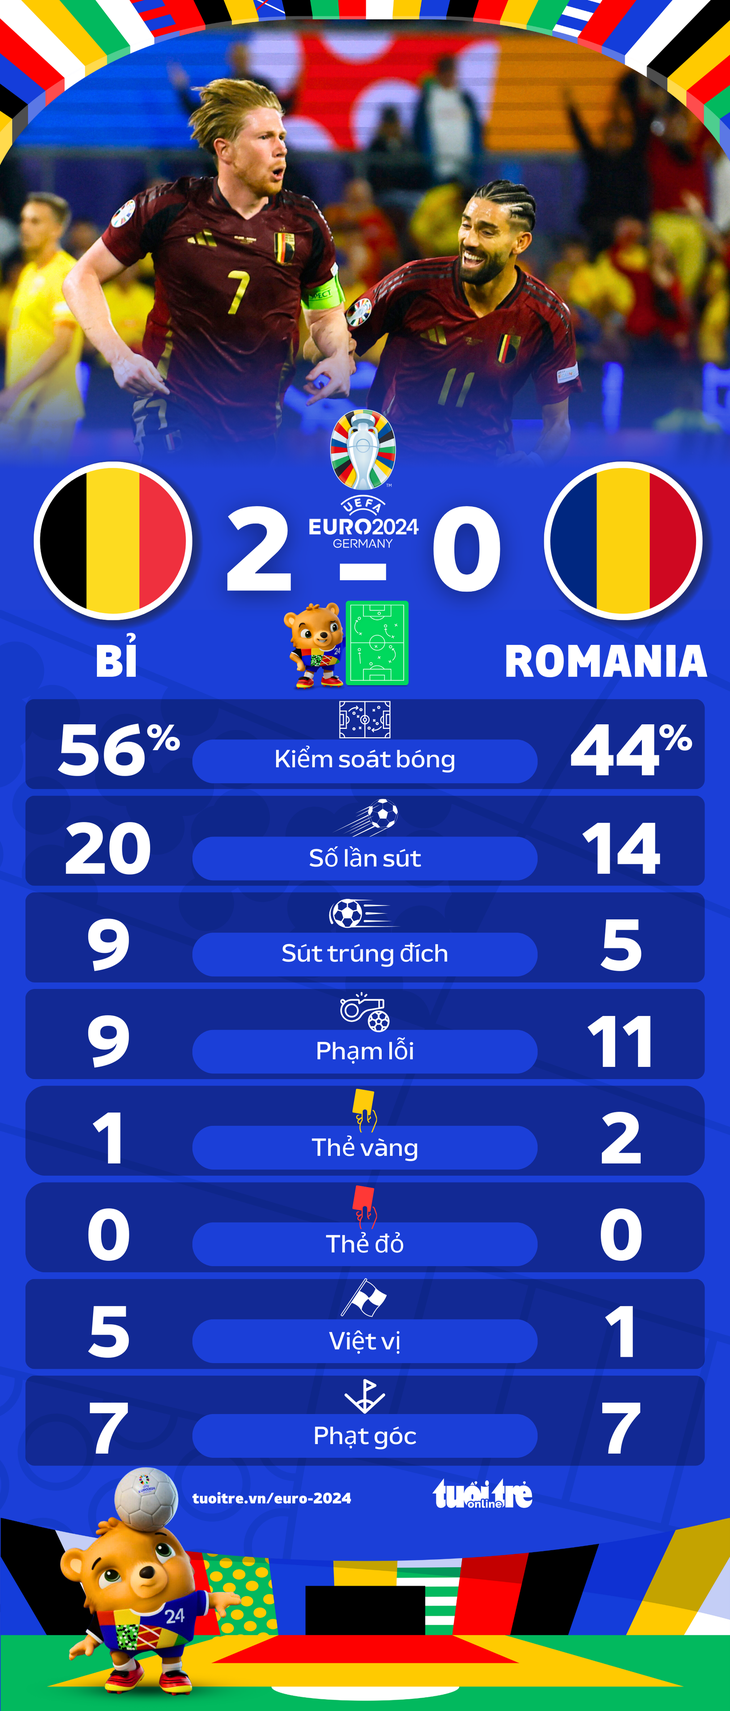 Thông số thống kê trận đấu giữa tuyển Bỉ và Romania - Đồ họa: AN BÌNH